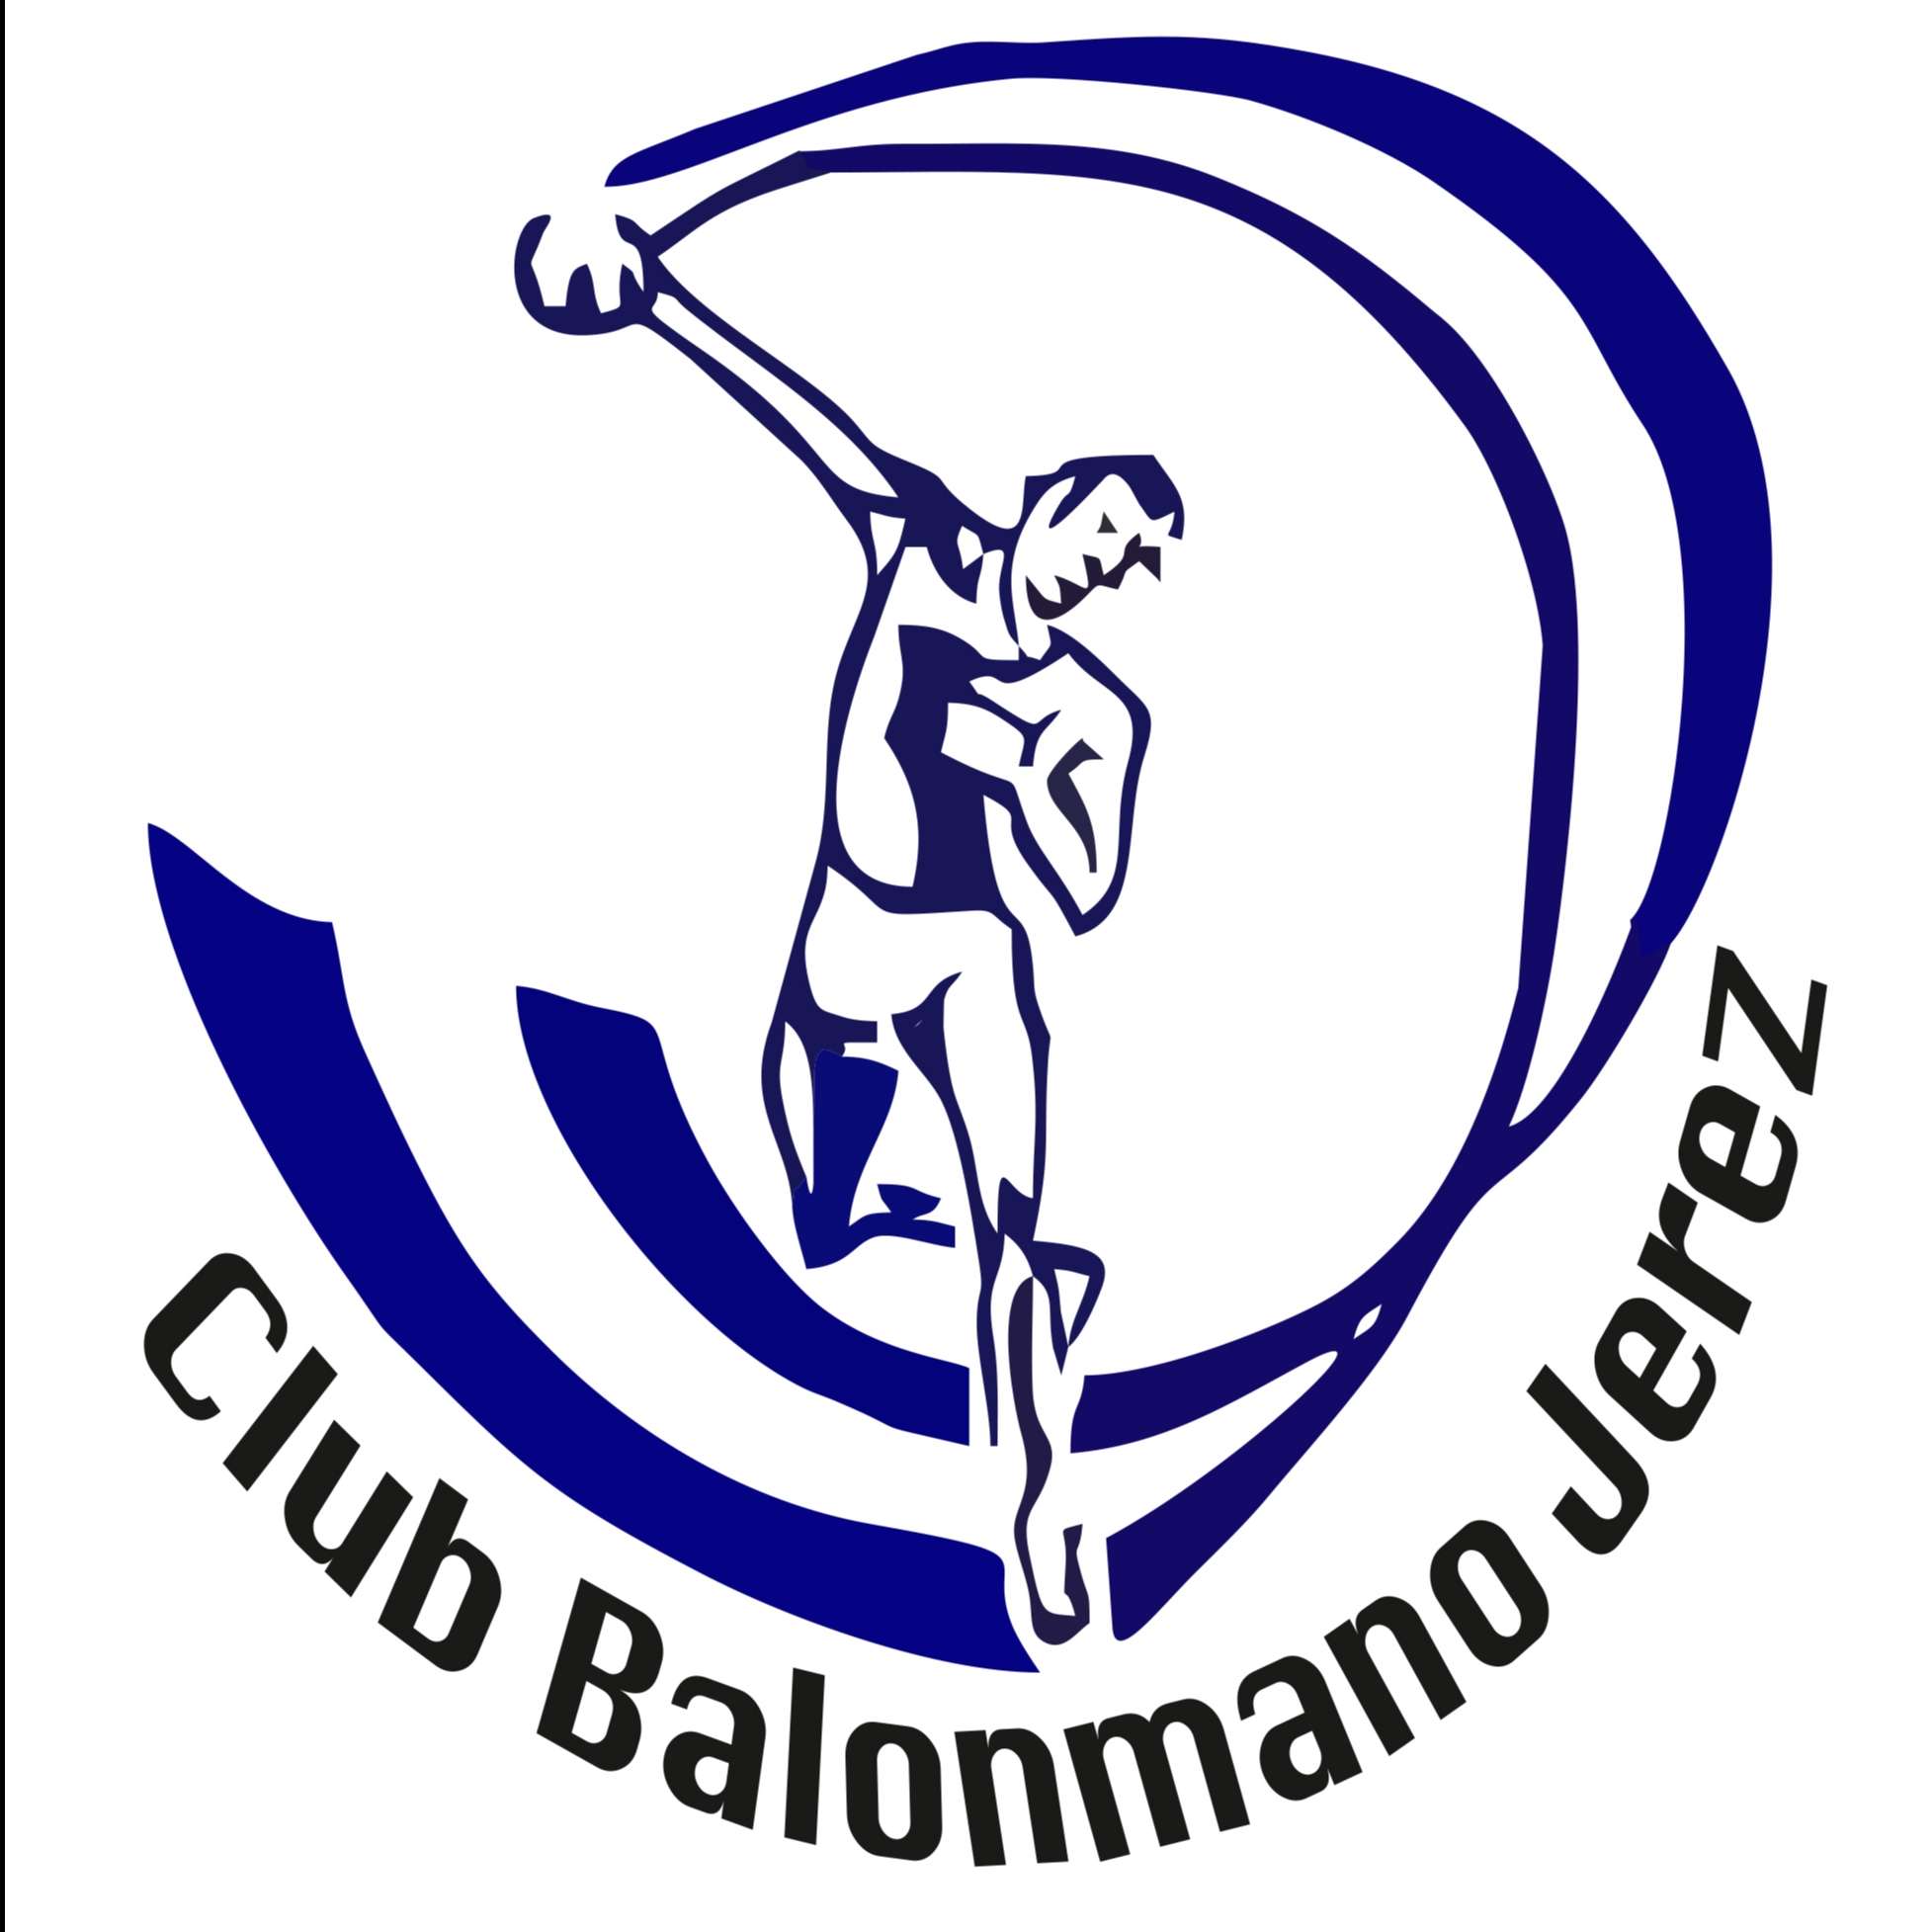 CLUB BALONMANO JEREZ